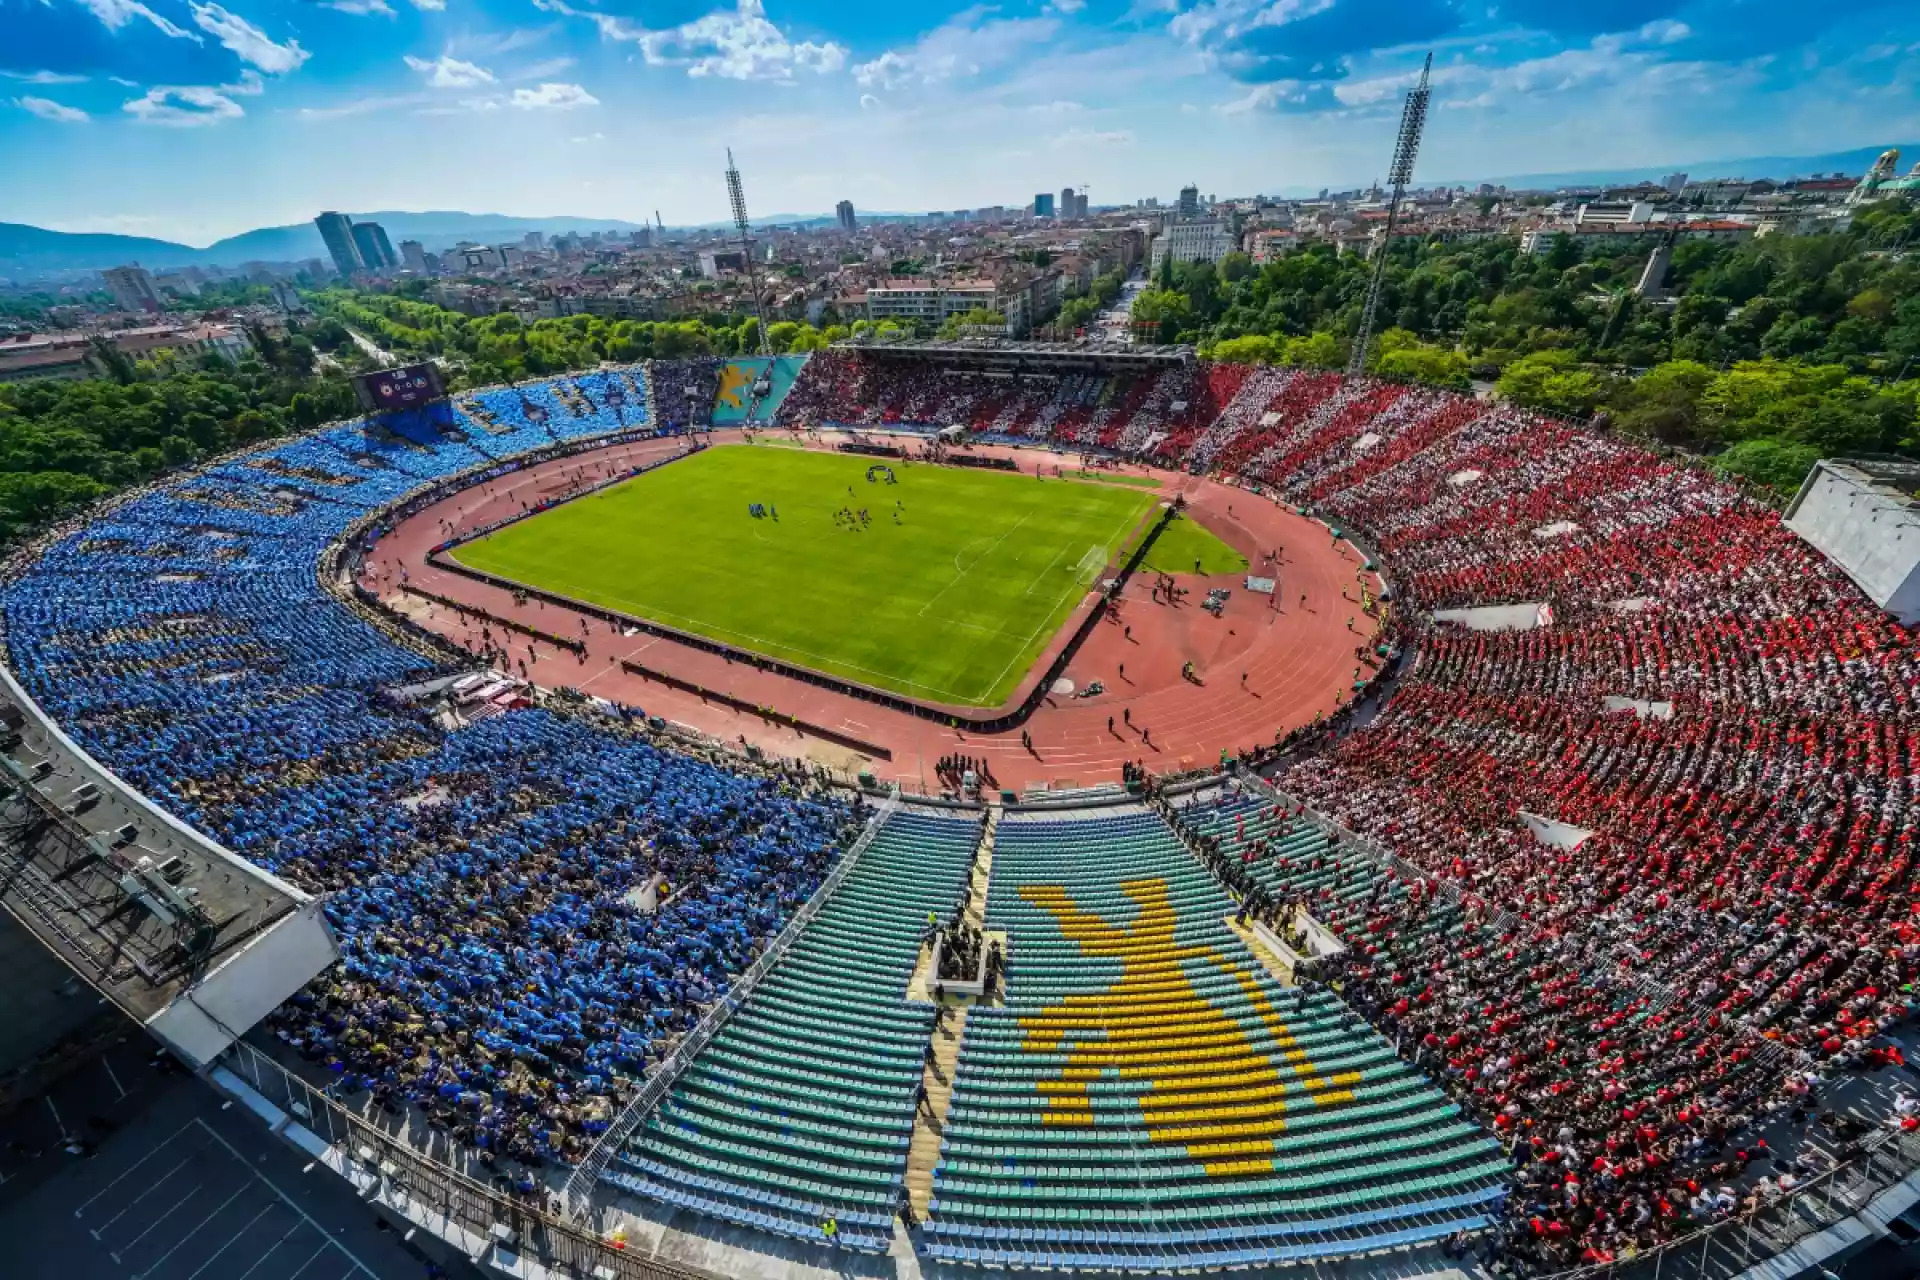 National stadium of Republic of Bulgaria "Vasil Levski"